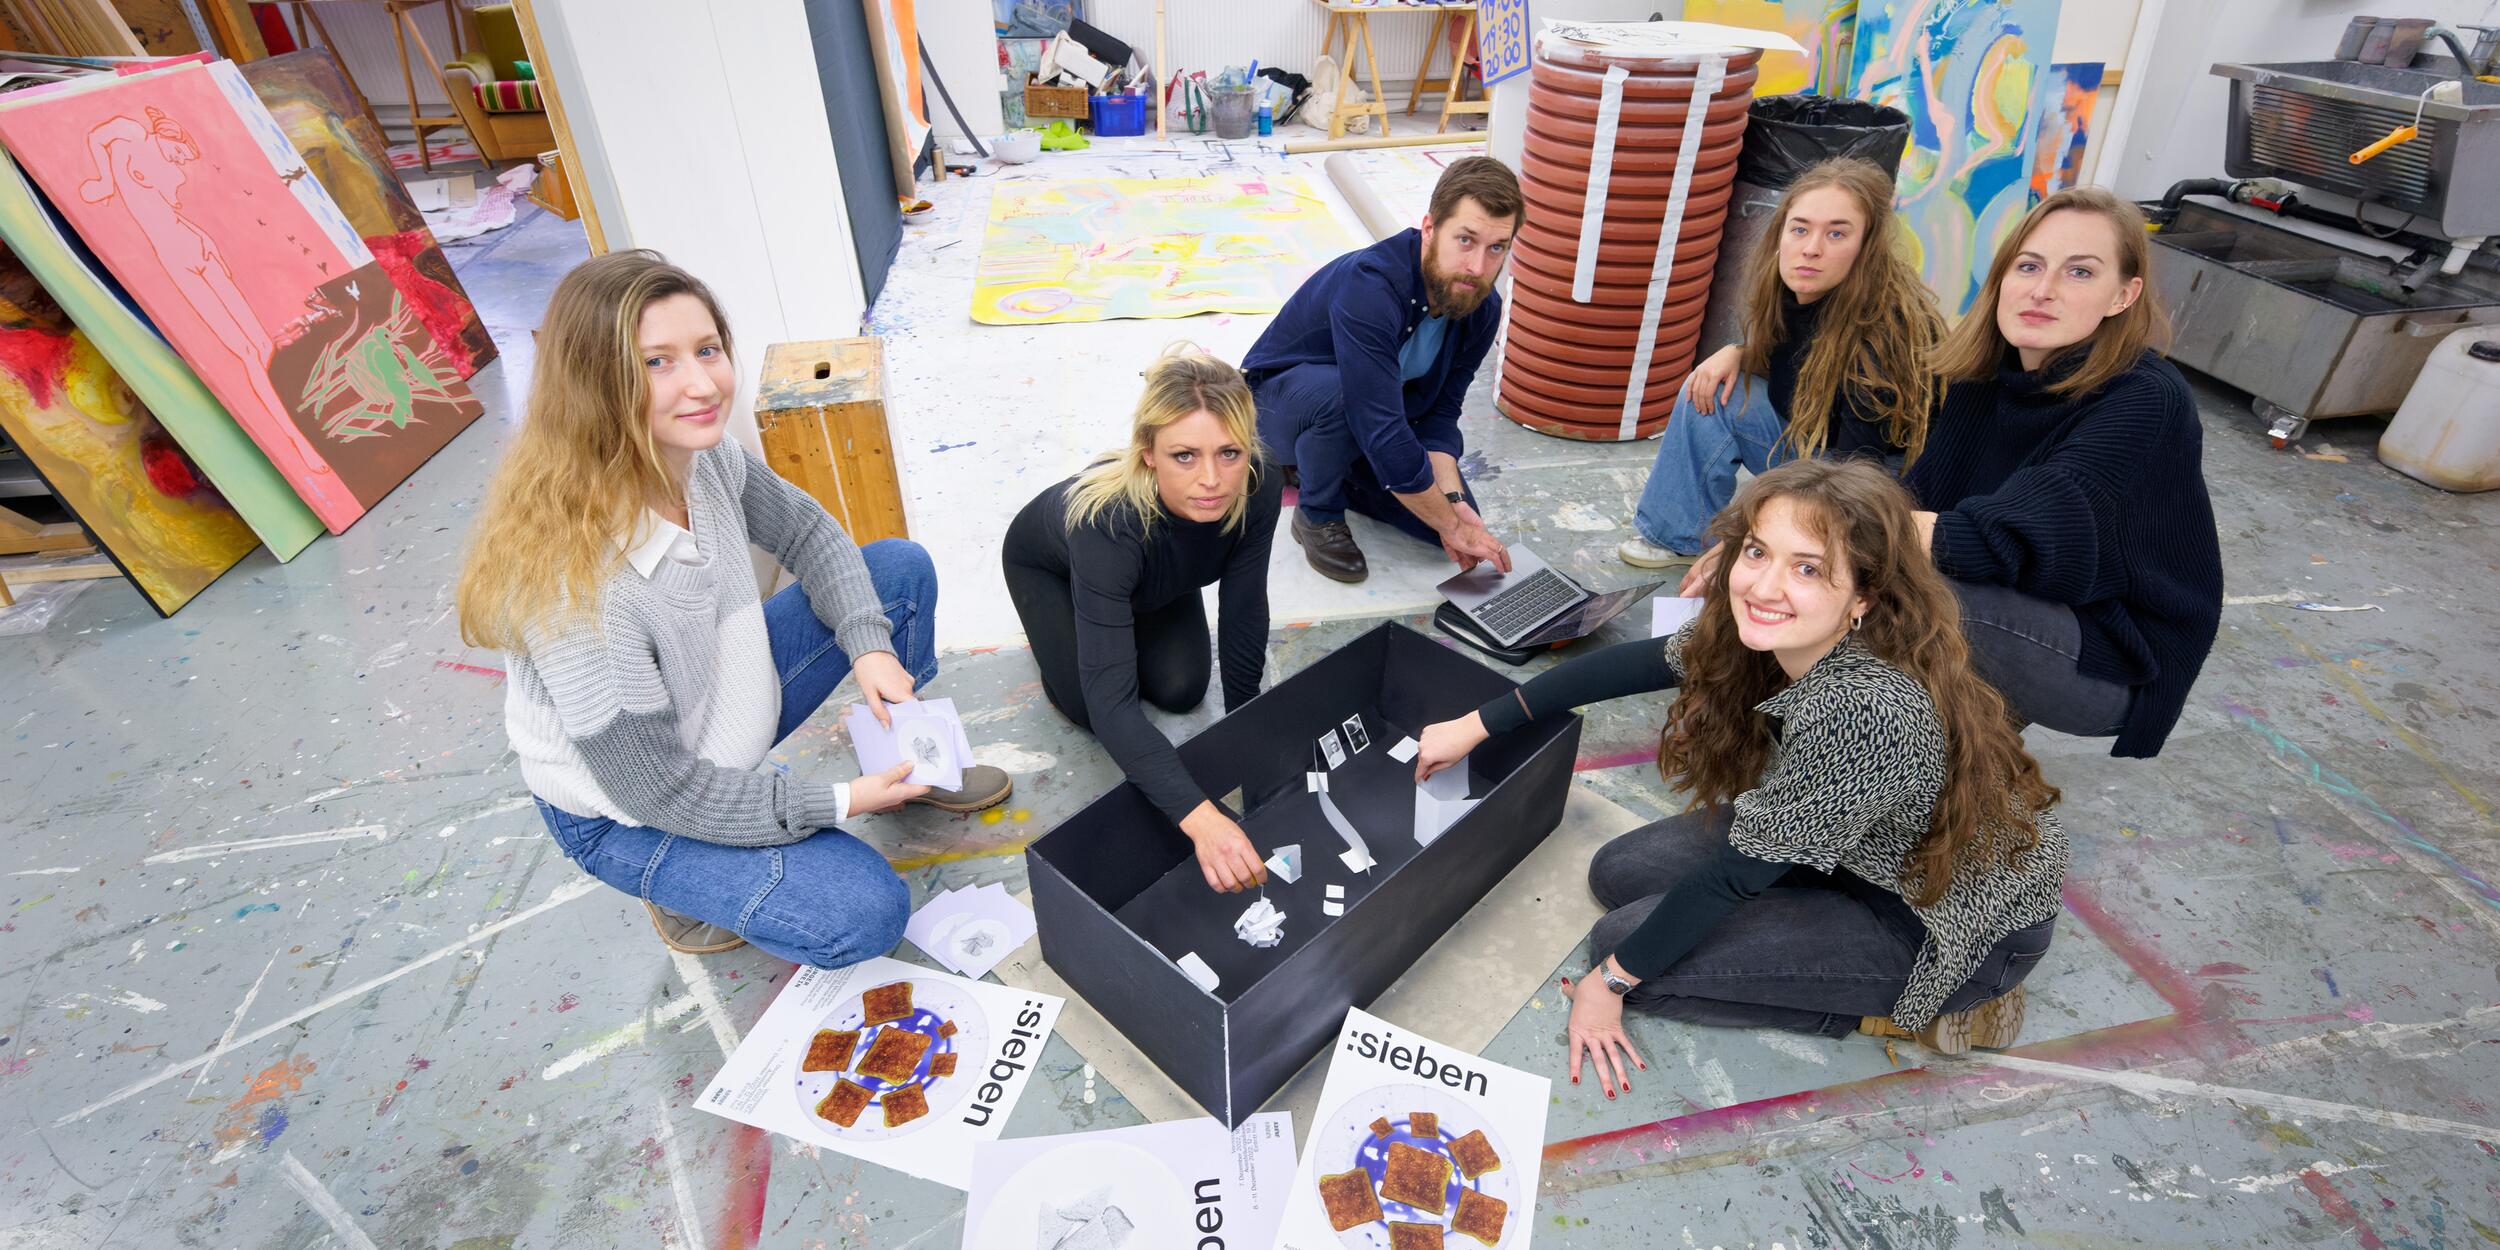 Sechs Studierende in einem Arbeitsraum, Staffeleien, Malereien, am Boden Plakate mit der Aufschrift "sieben" | © Christian Schneider